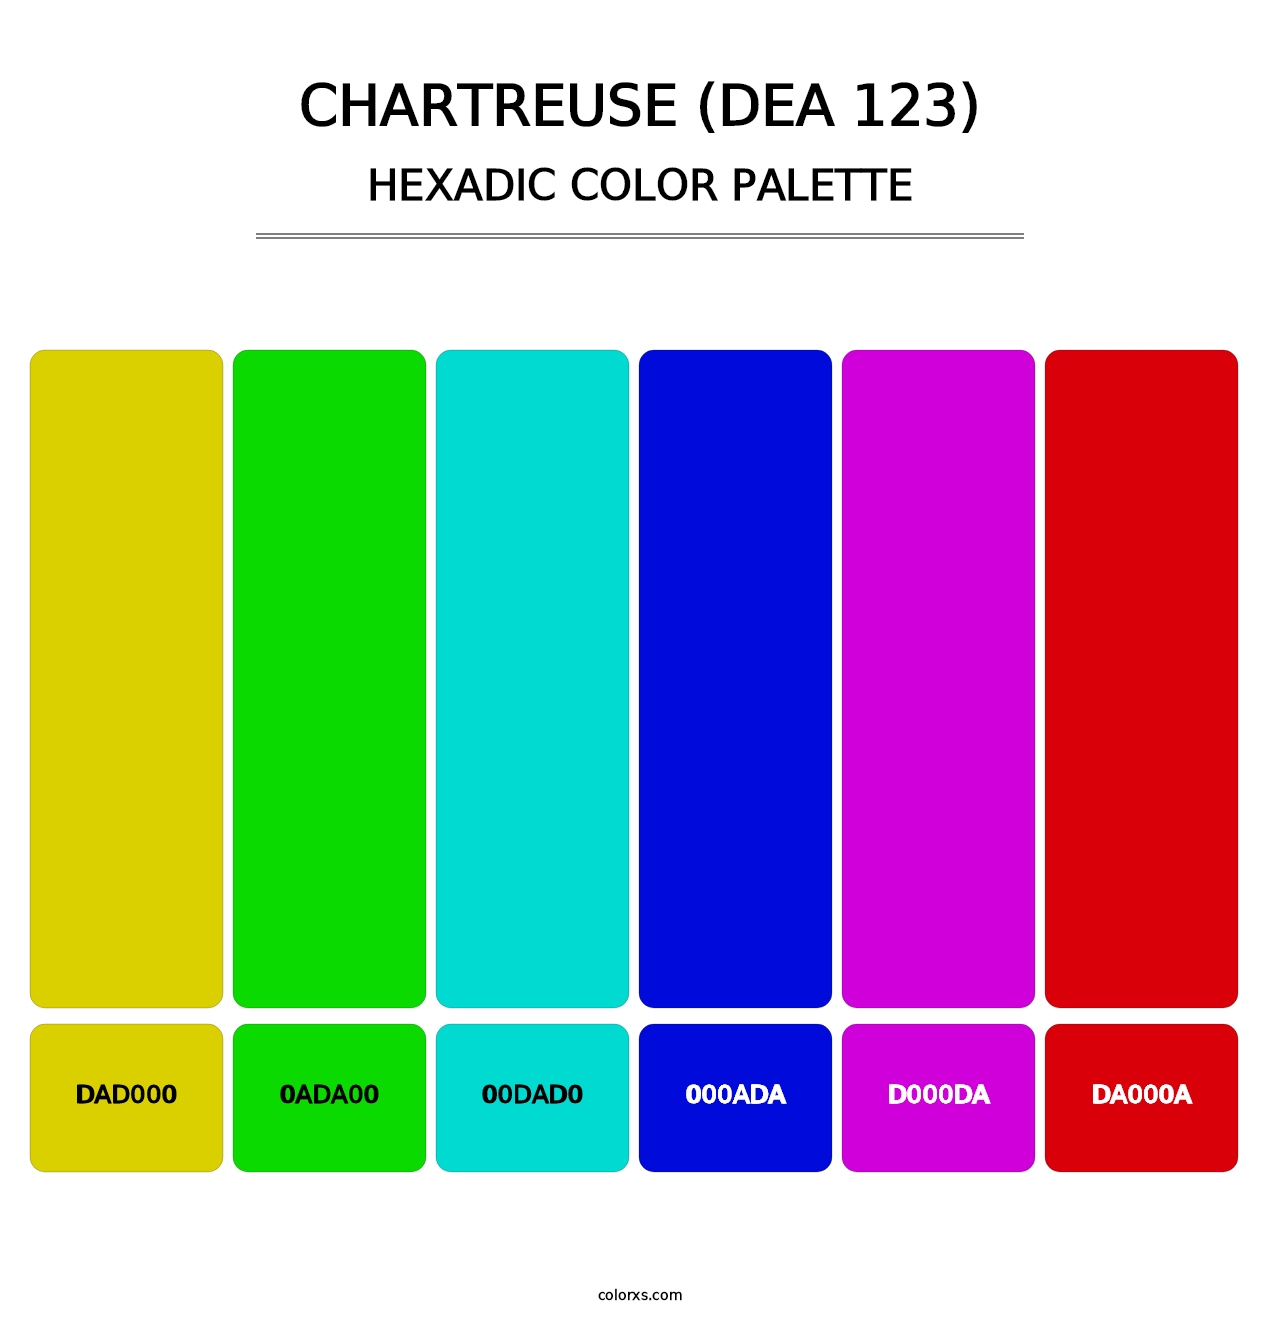 Chartreuse (DEA 123) - Hexadic Color Palette